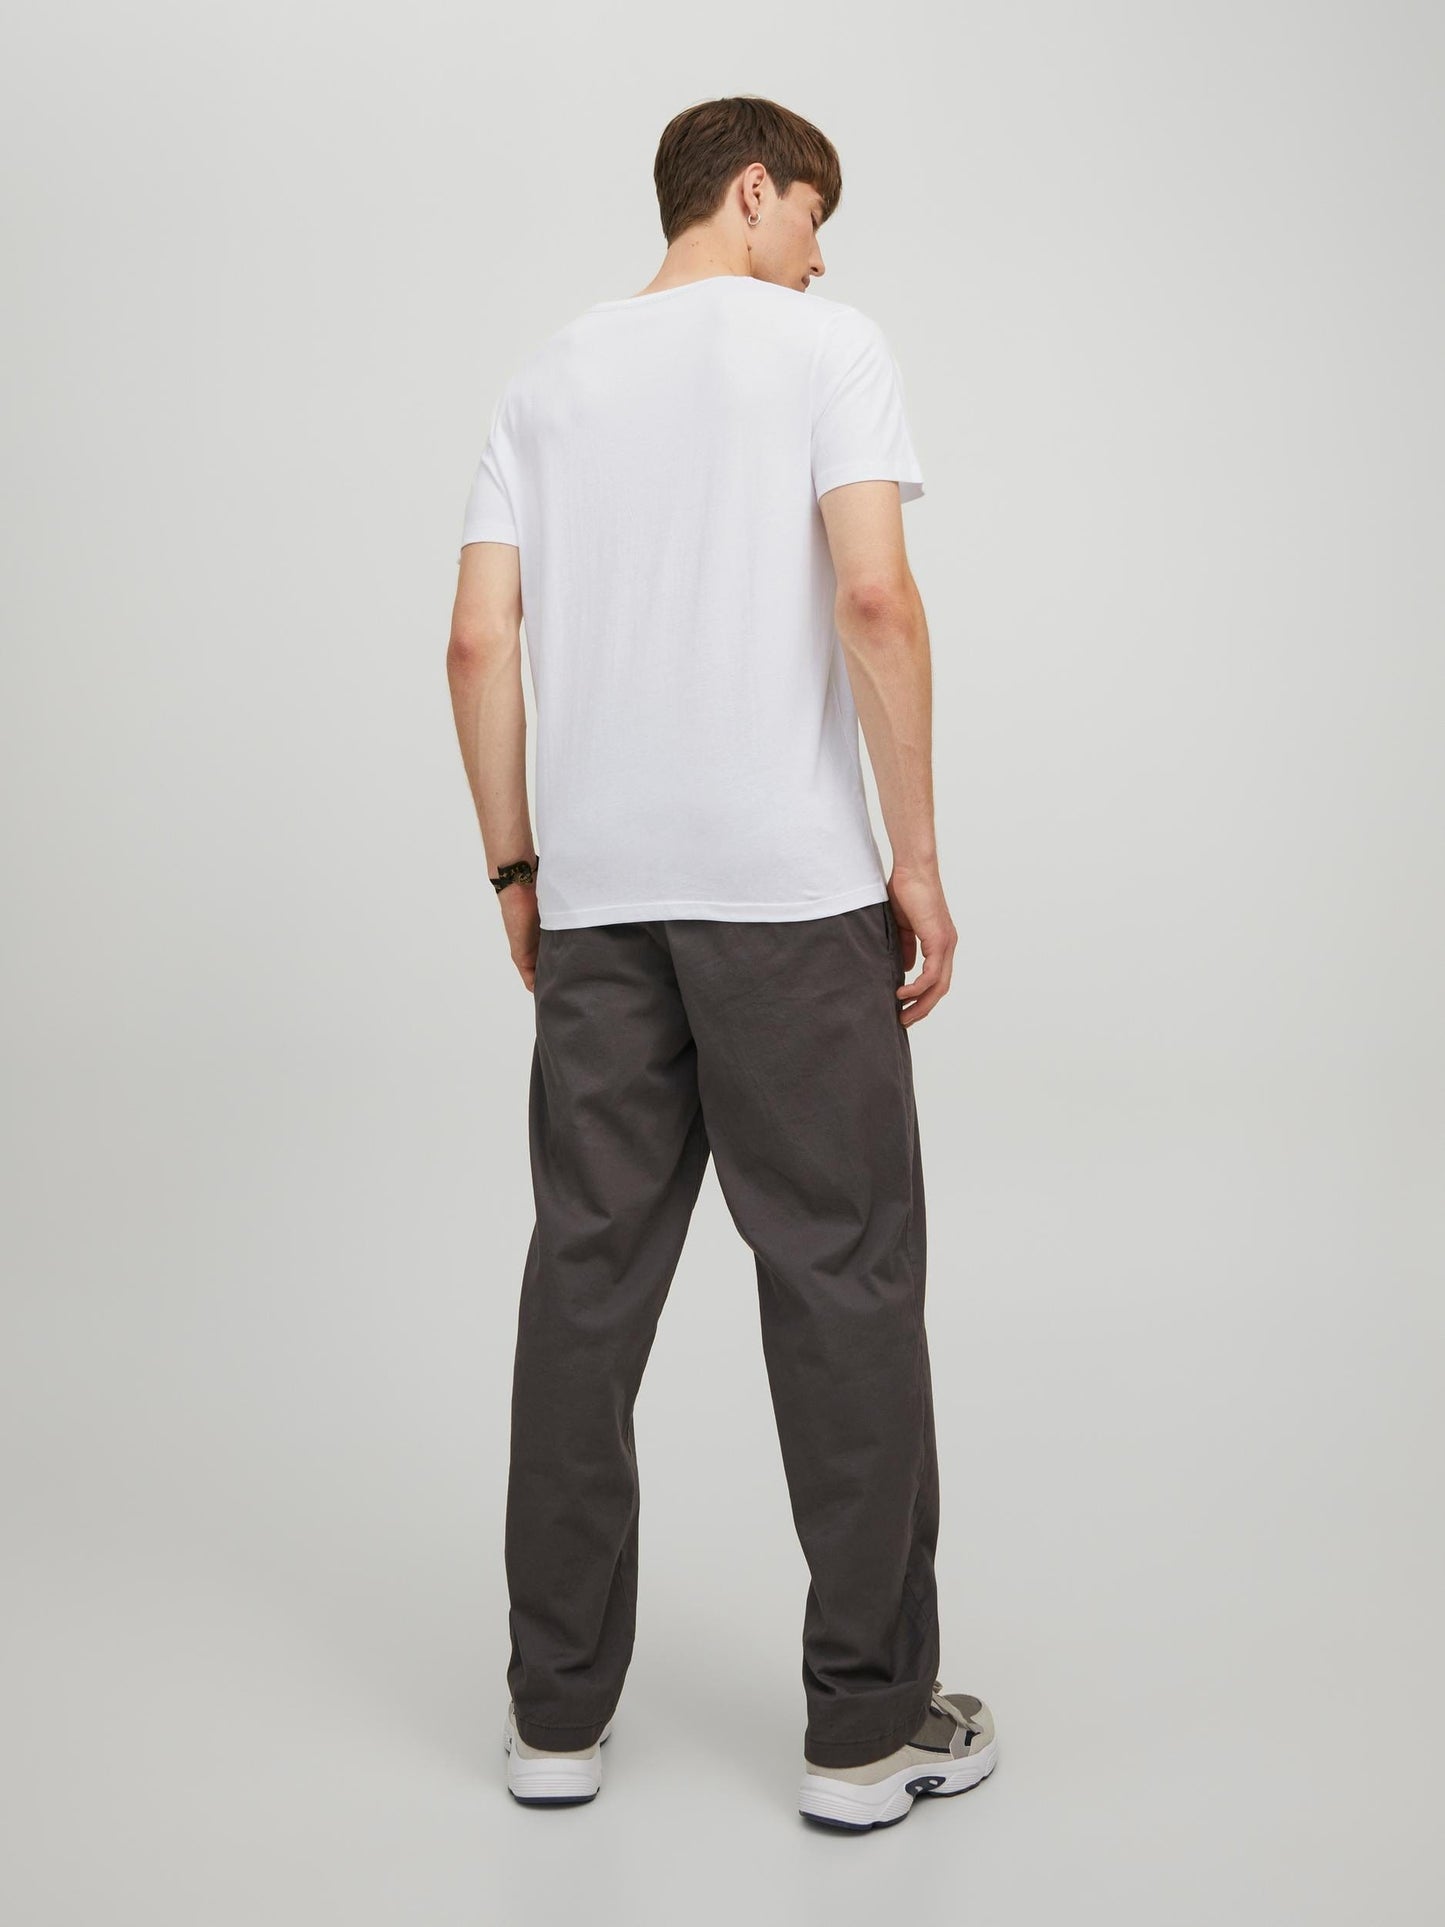 Camiseta de manga corta con logo blanca - CORP